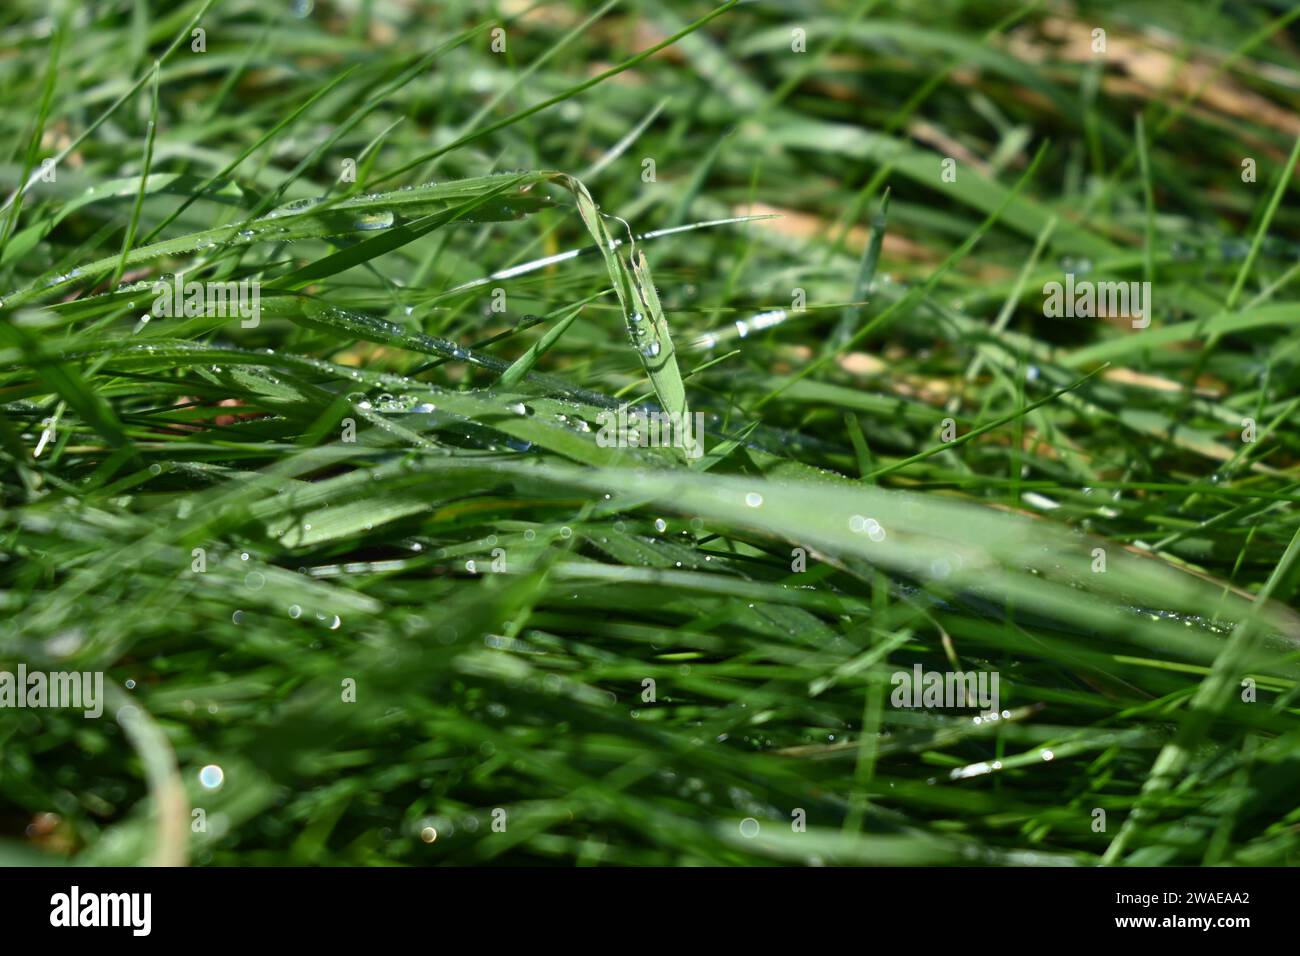 Une photographie en gros plan haute résolution d'un champ herbeux vert vibrant avec des gouttelettes d'eau scintillantes reflétant la lumière Banque D'Images